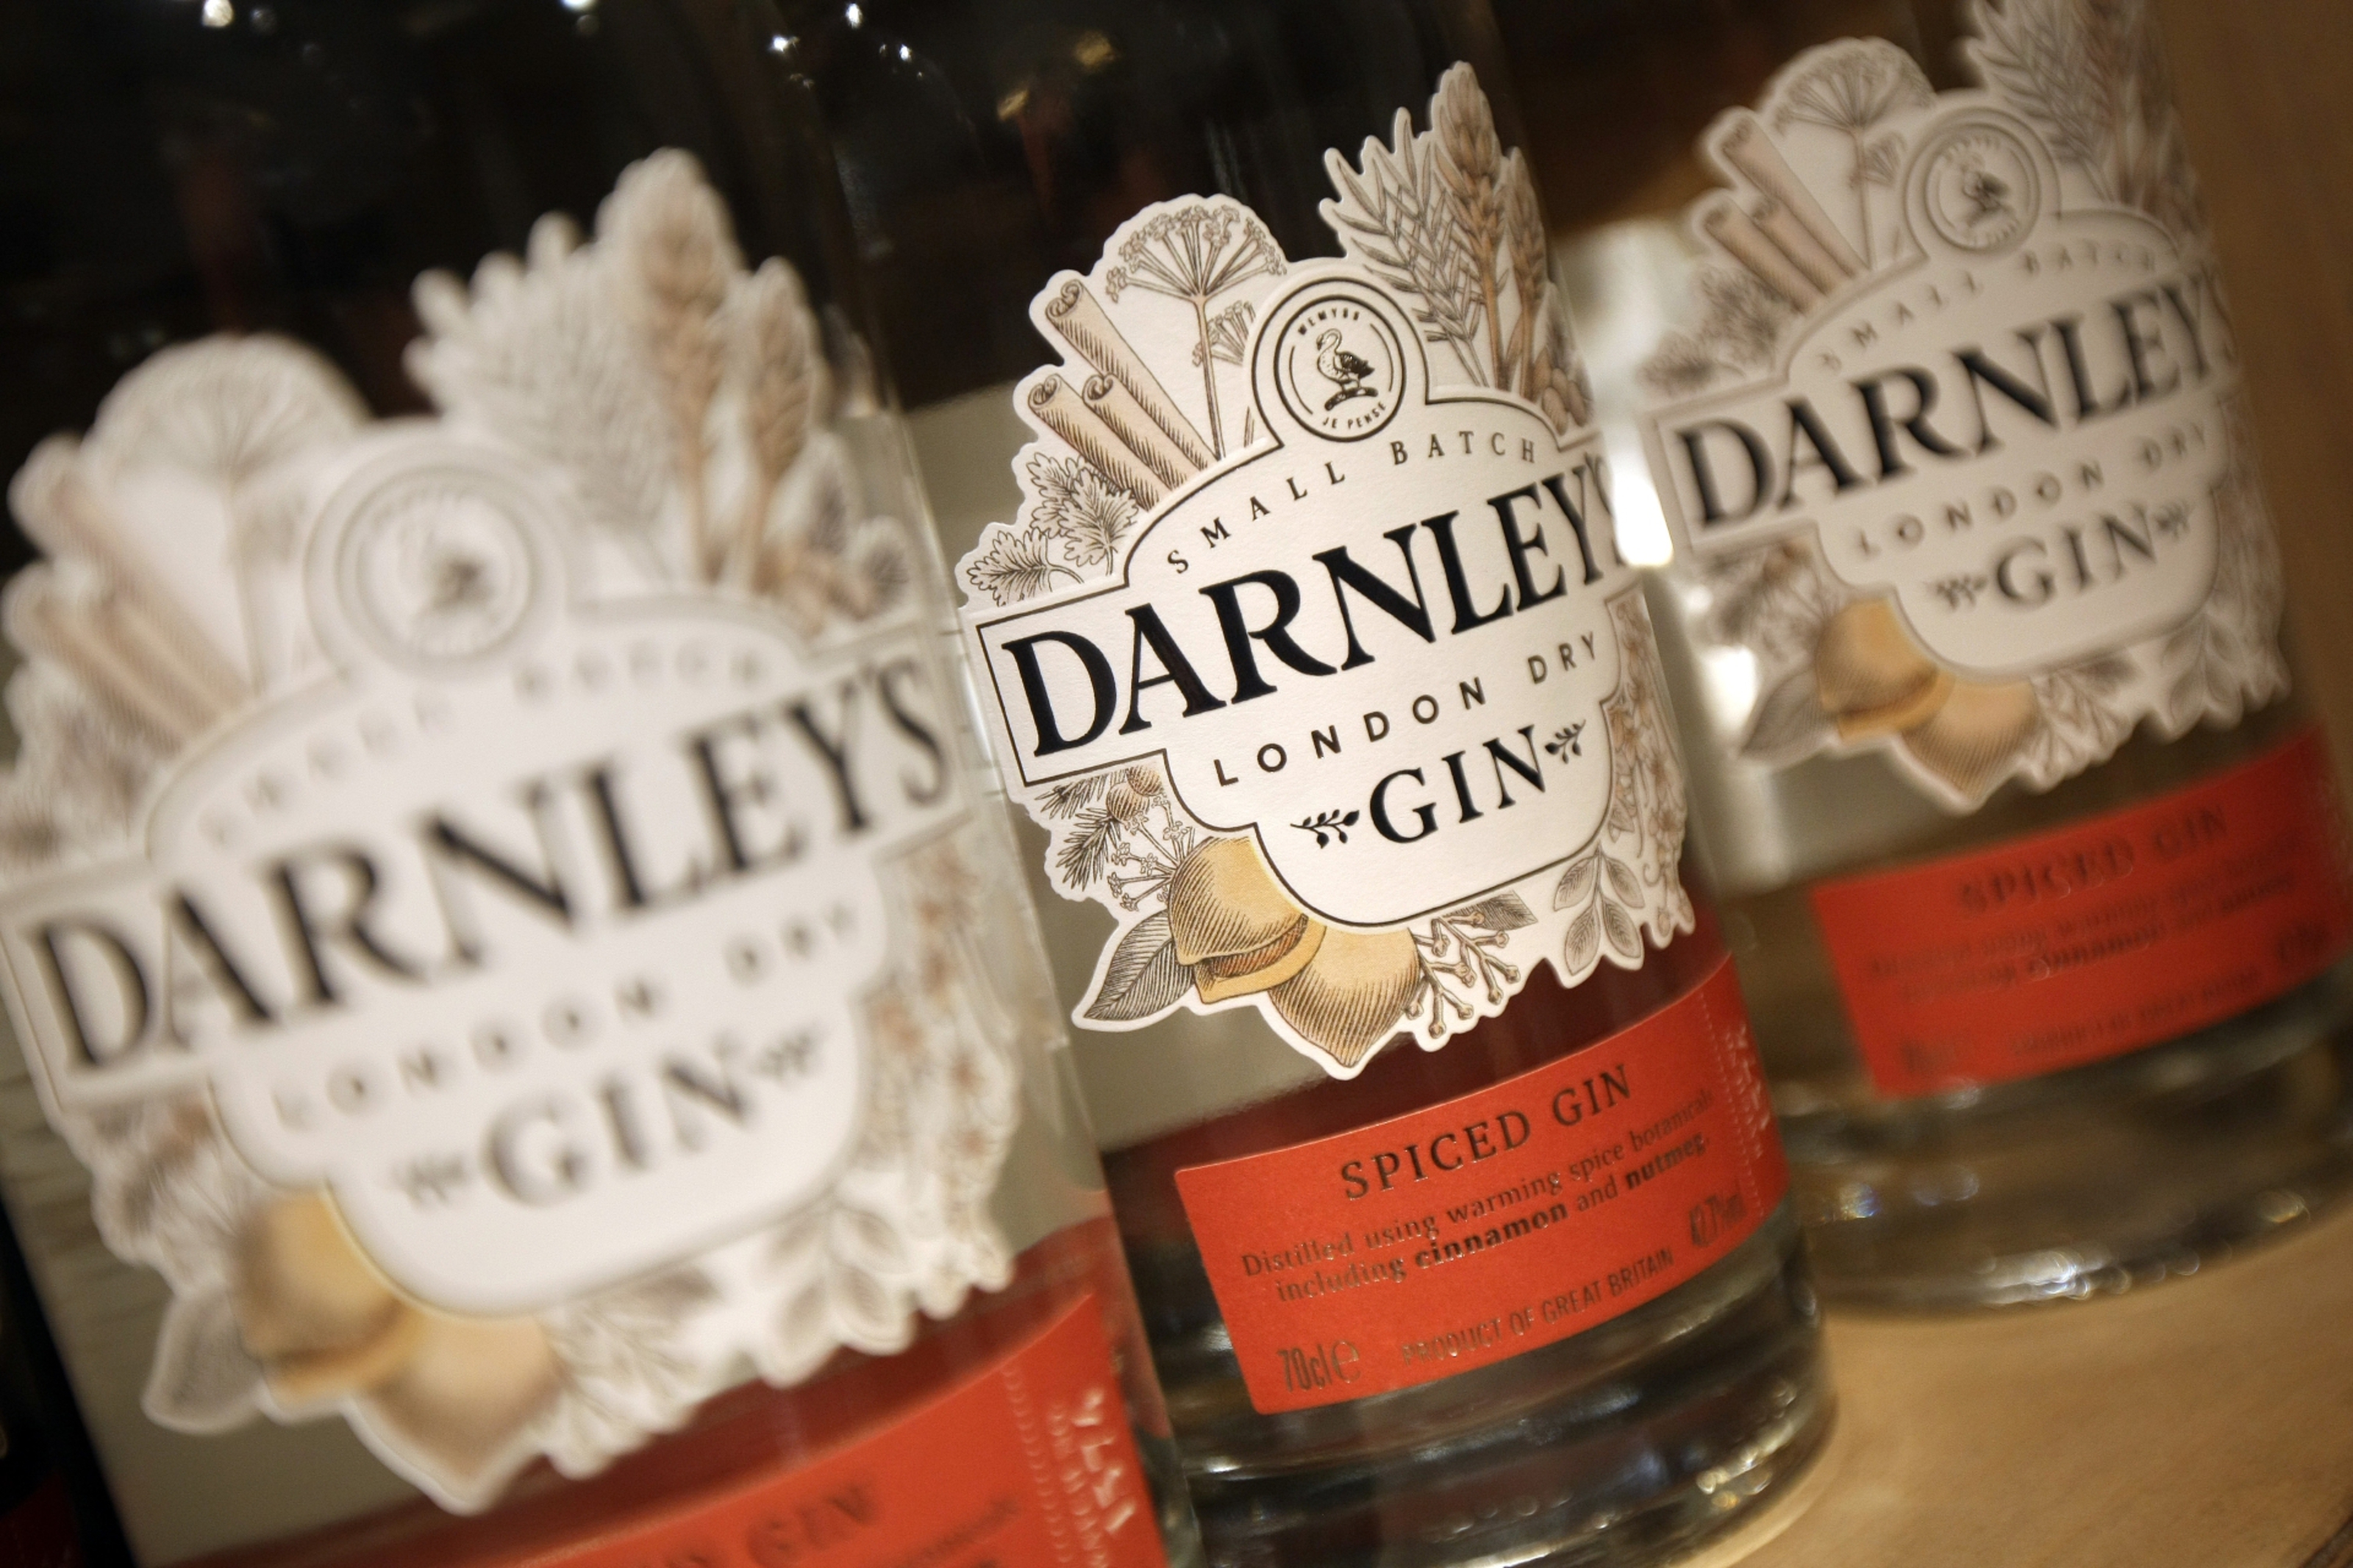 Darnleys Gin has just opened a new distillery in Kingsbarns.